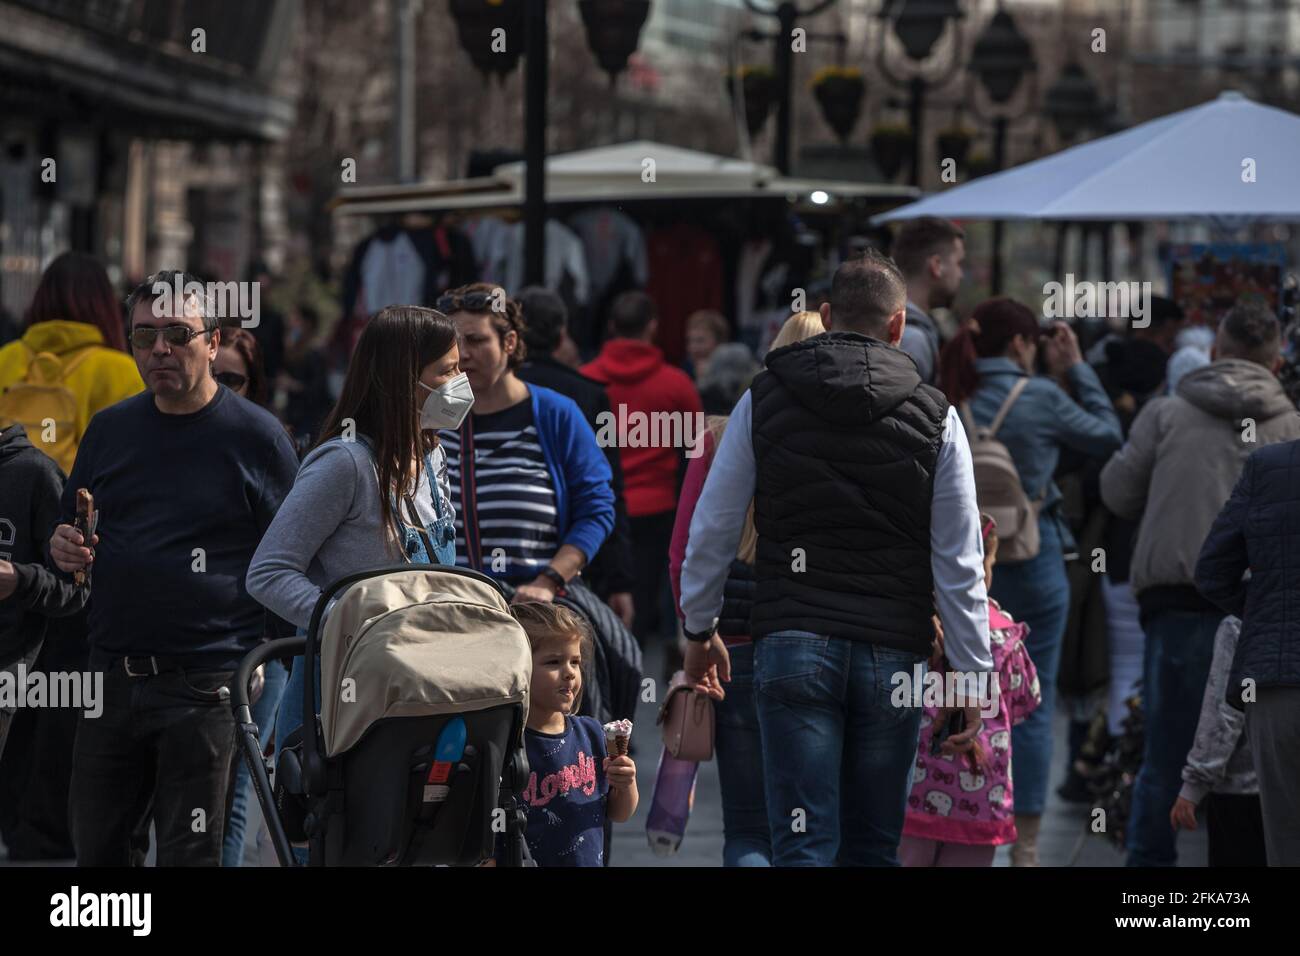 Immagine di una famiglia fatta di una donna e di un passeggino con il suo ragazzo che cammina nel mezzo di una folla con una maschera facciale, a Belgrado, Serbia, durante Covid 1 Foto Stock